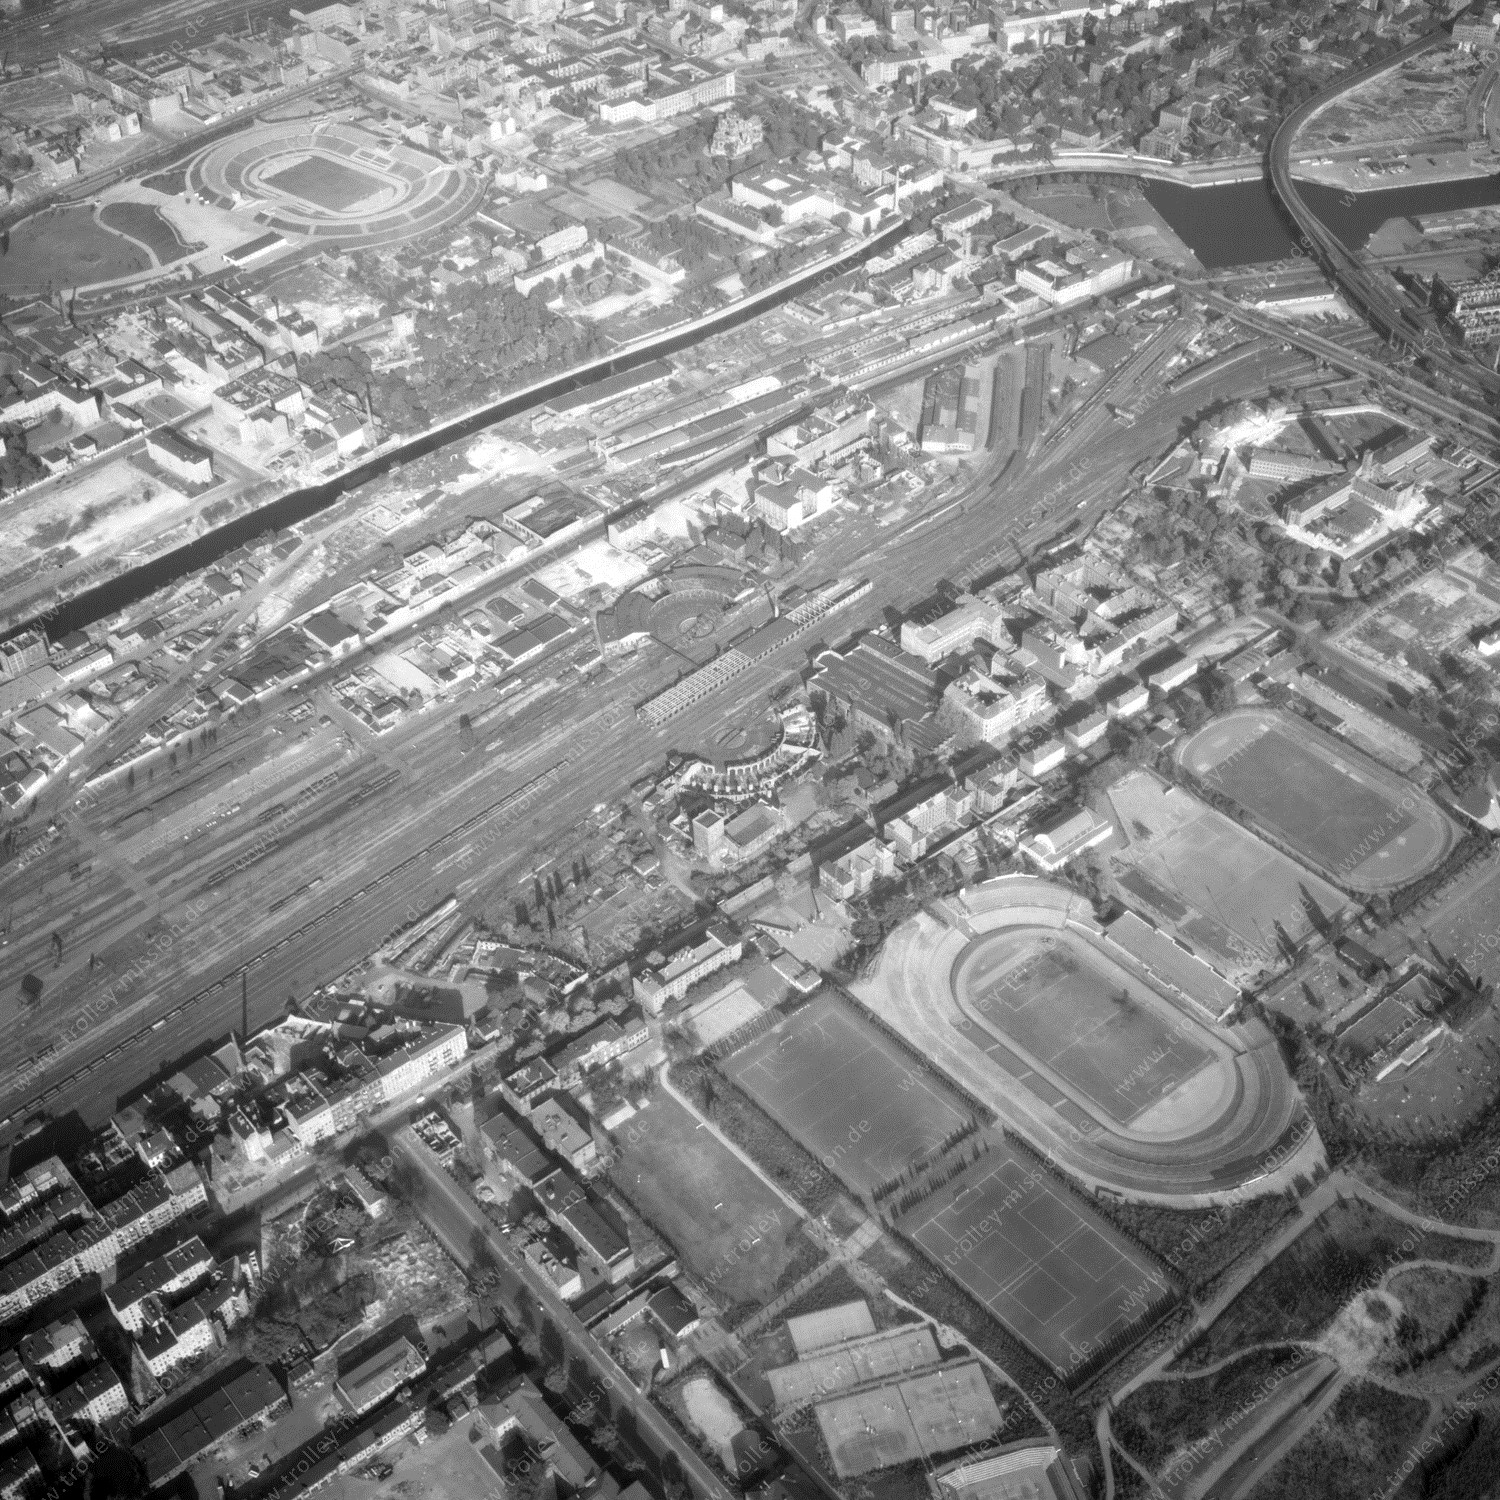 Alte Fotos und Luftbilder von Berlin - Luftbildaufnahme Nr. 02 - Historische Luftaufnahmen von West-Berlin aus dem Jahr 1954 - Flugstrecke Papa